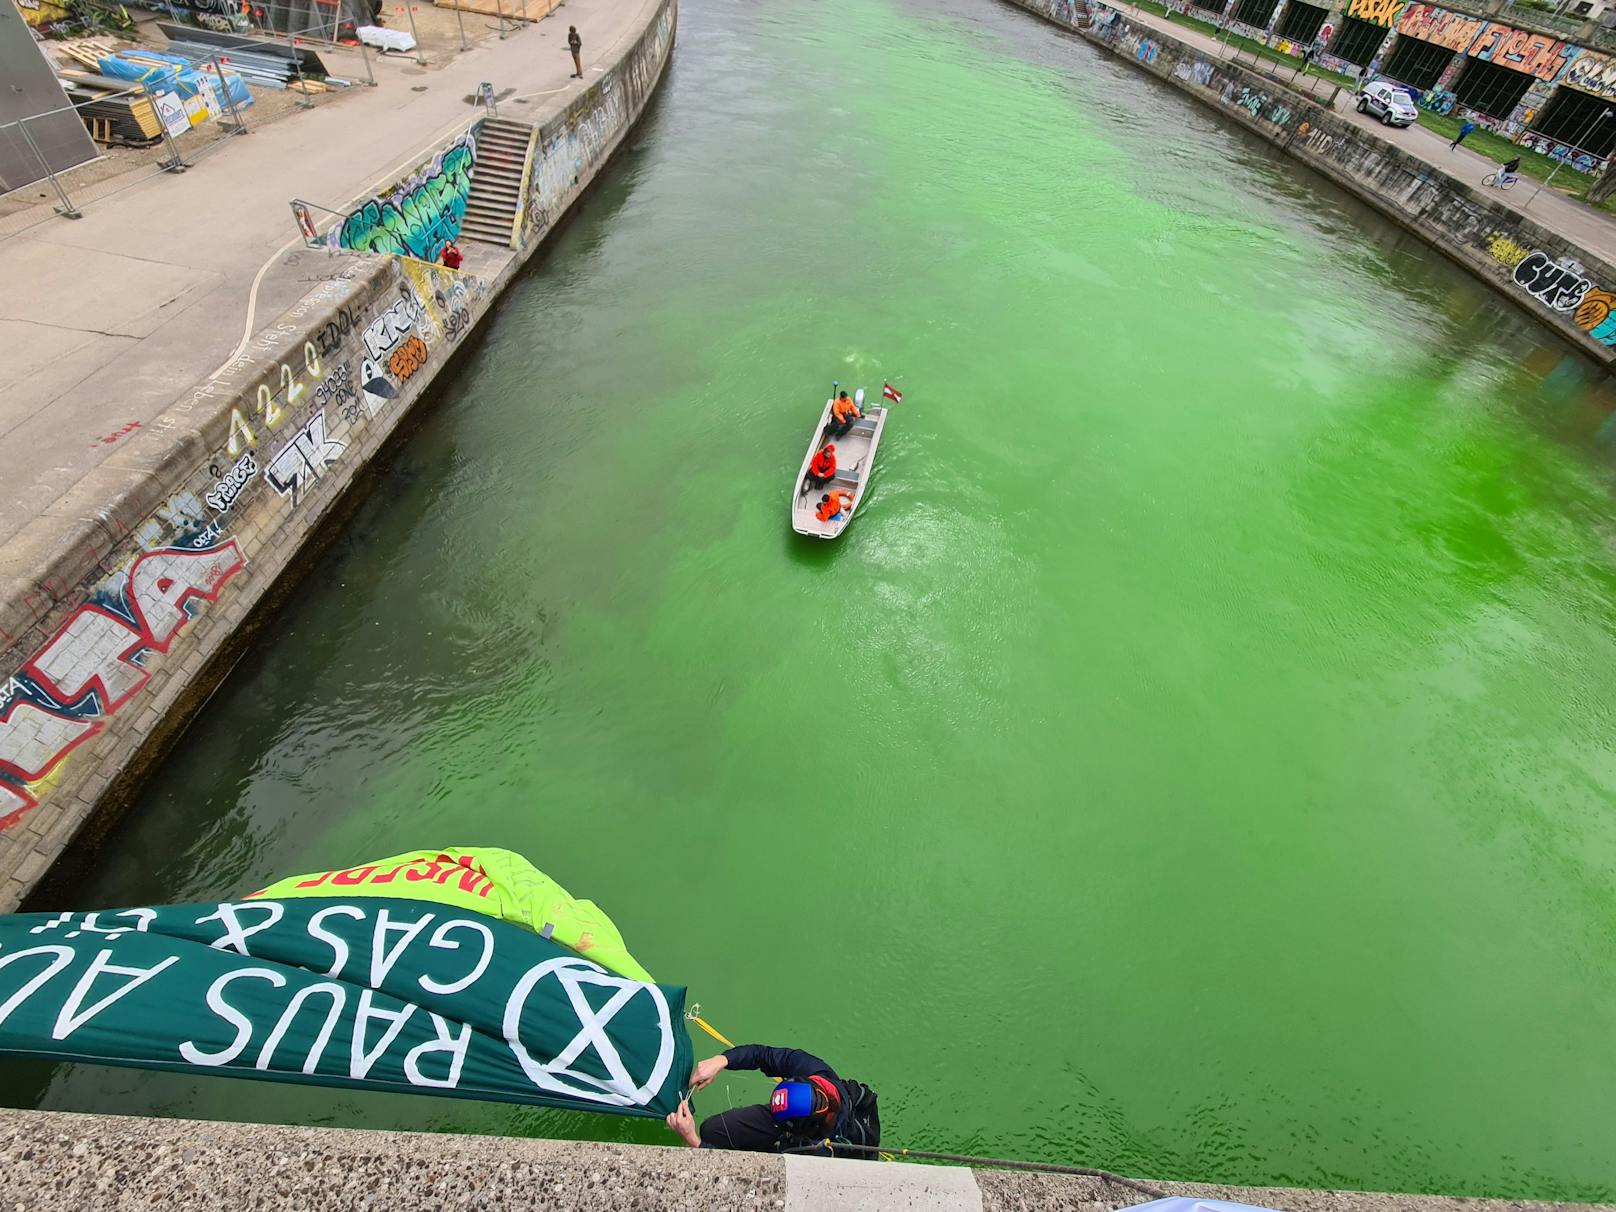 Klima-Aktivisten der "Extinction Rebellion" blockierten am 25. März die Wiener Salztorbrücke und färbten das Wasser des Donaukanals grün ein.